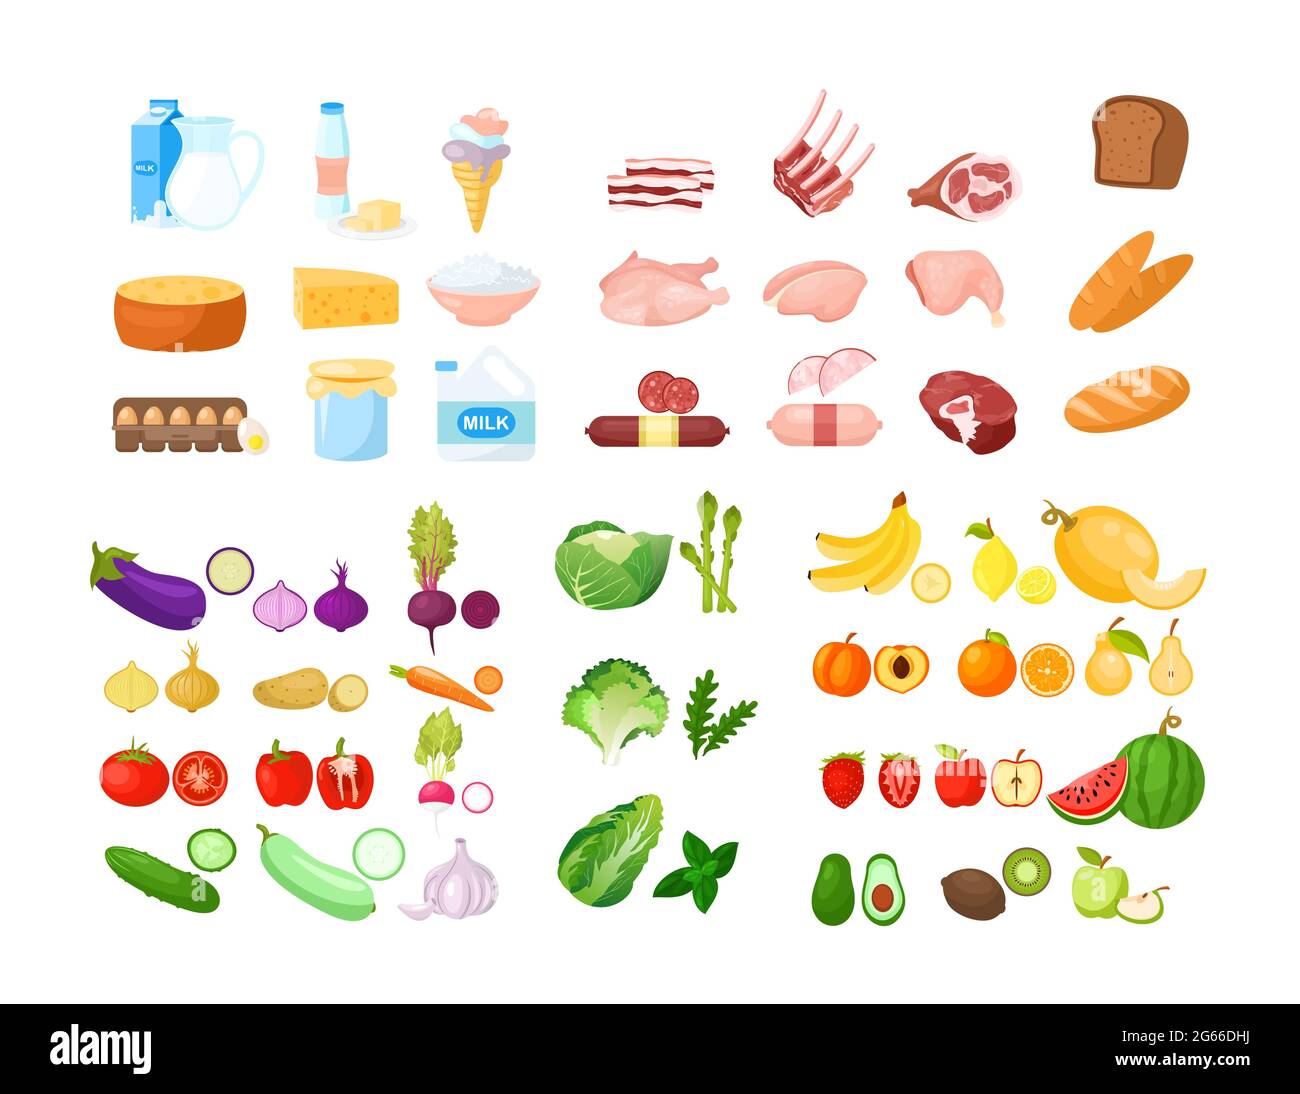 Vektor-Illustration der Lebensmittel-Cartoon-Sammlung. Obst, Gemüse,  Backwaren, Milchprodukte und Fleischprodukte. Isolierte Cliparts für  Lebensmittel. Lebensmittelgeschäft Stock-Vektorgrafik - Alamy